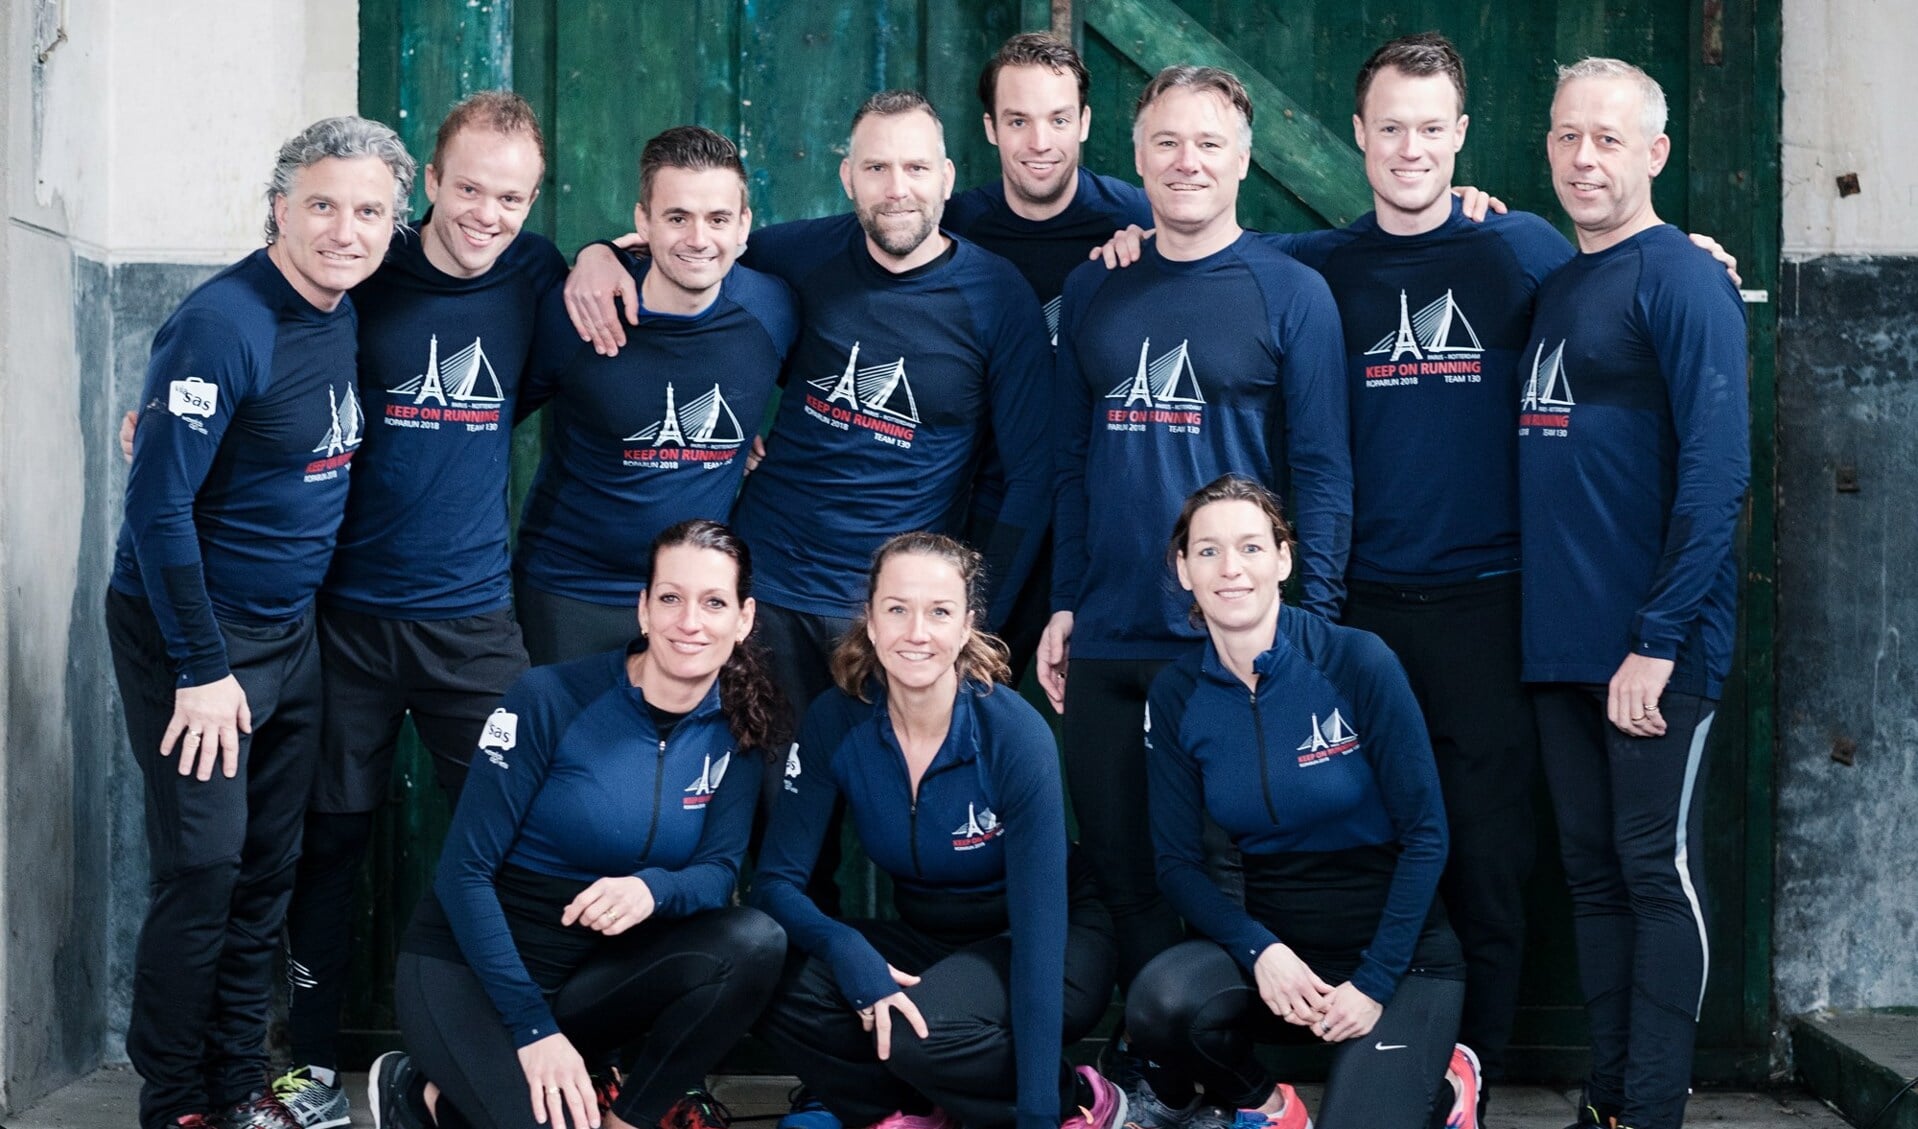 Team Keep on Running van Smit & Partners deed eerder dit jaar mee aan de Roparun.